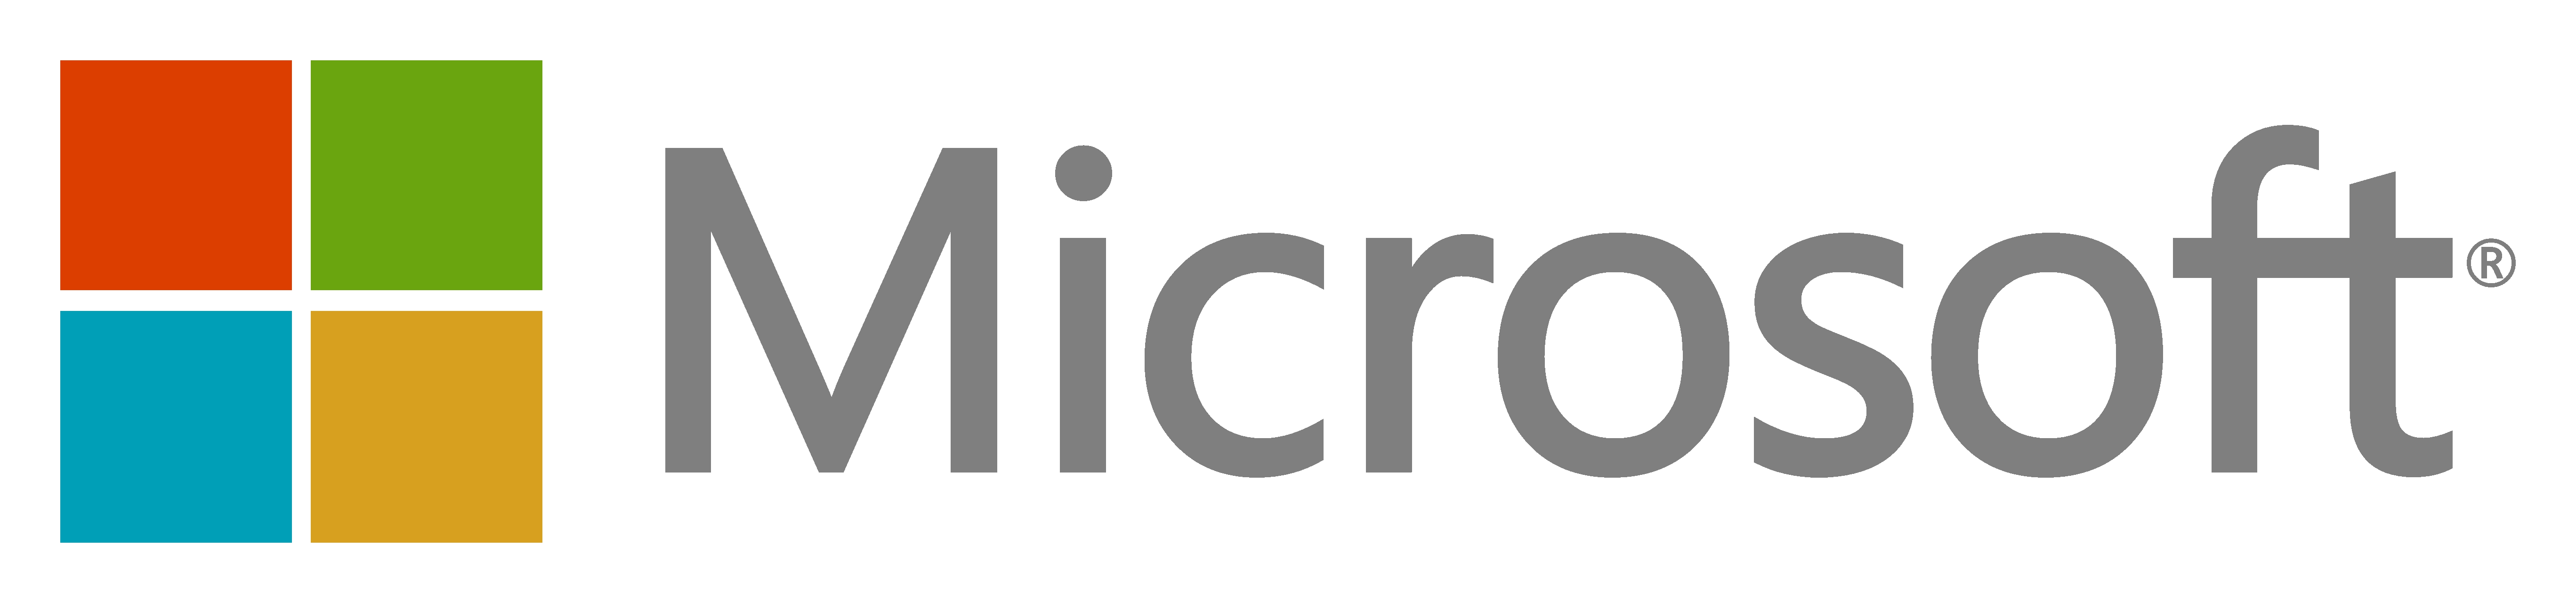 micro_logo_high